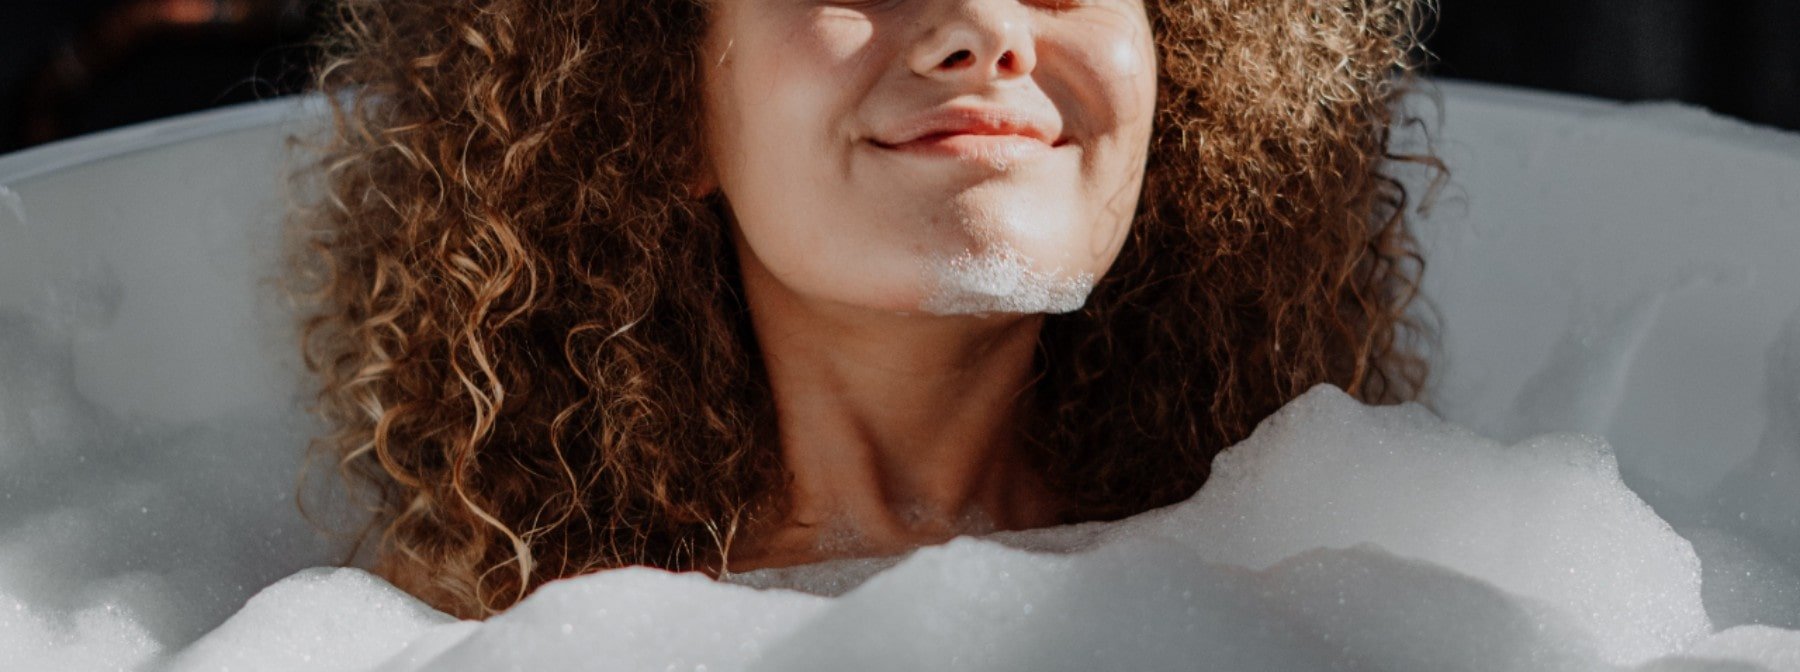 Le bain chaud pour une meilleure santé, prouvé par la science